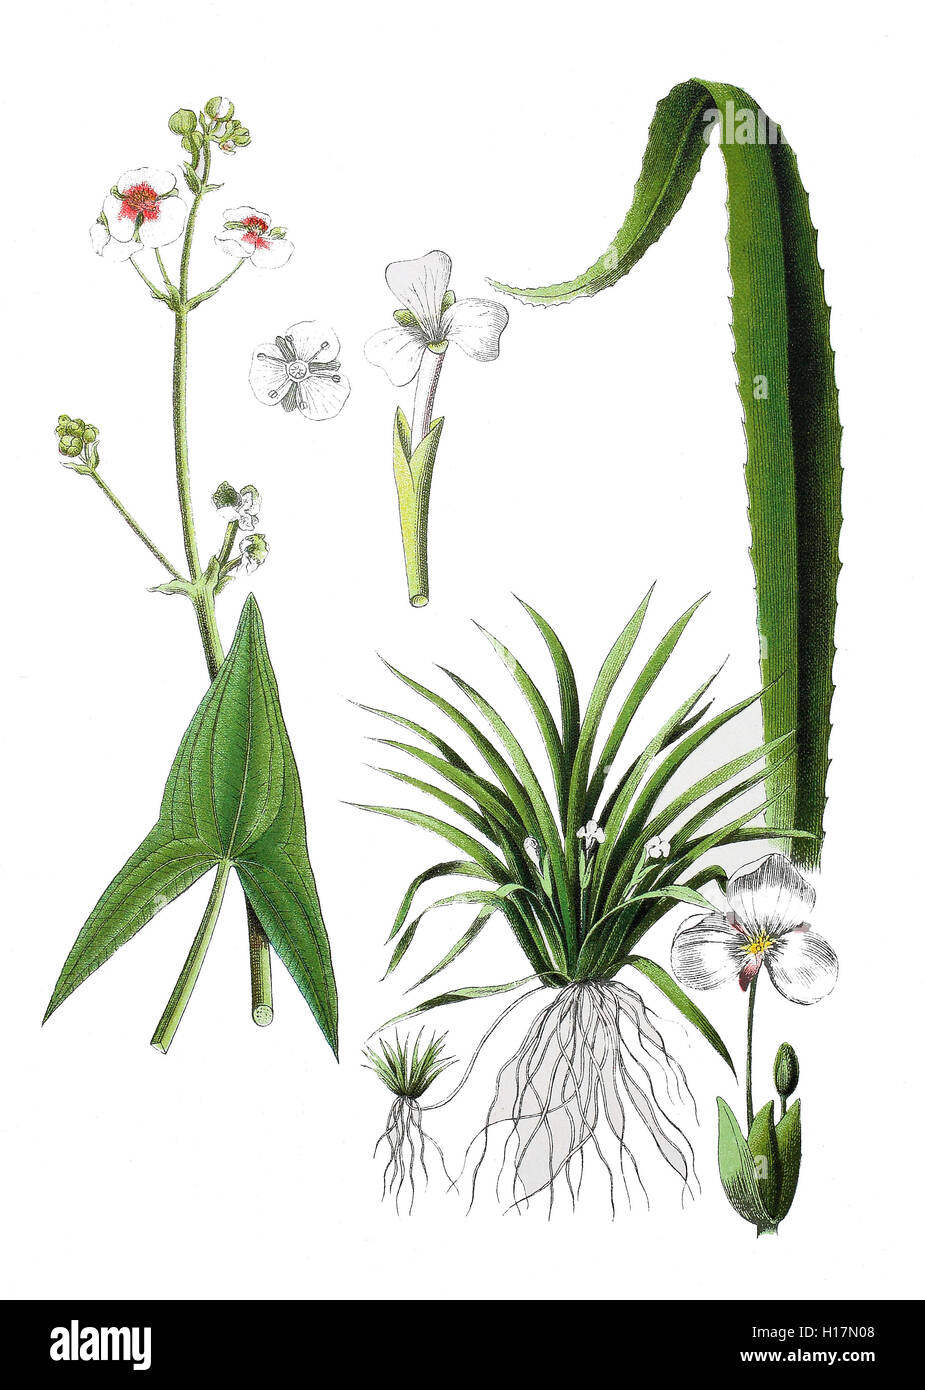 Gewöhnliches Pfeilkraut auch Pfeilblatt, Sagittaria sagittifolia (links), Krebsschere, Stratiotes aloides (rechts) Stock Photo